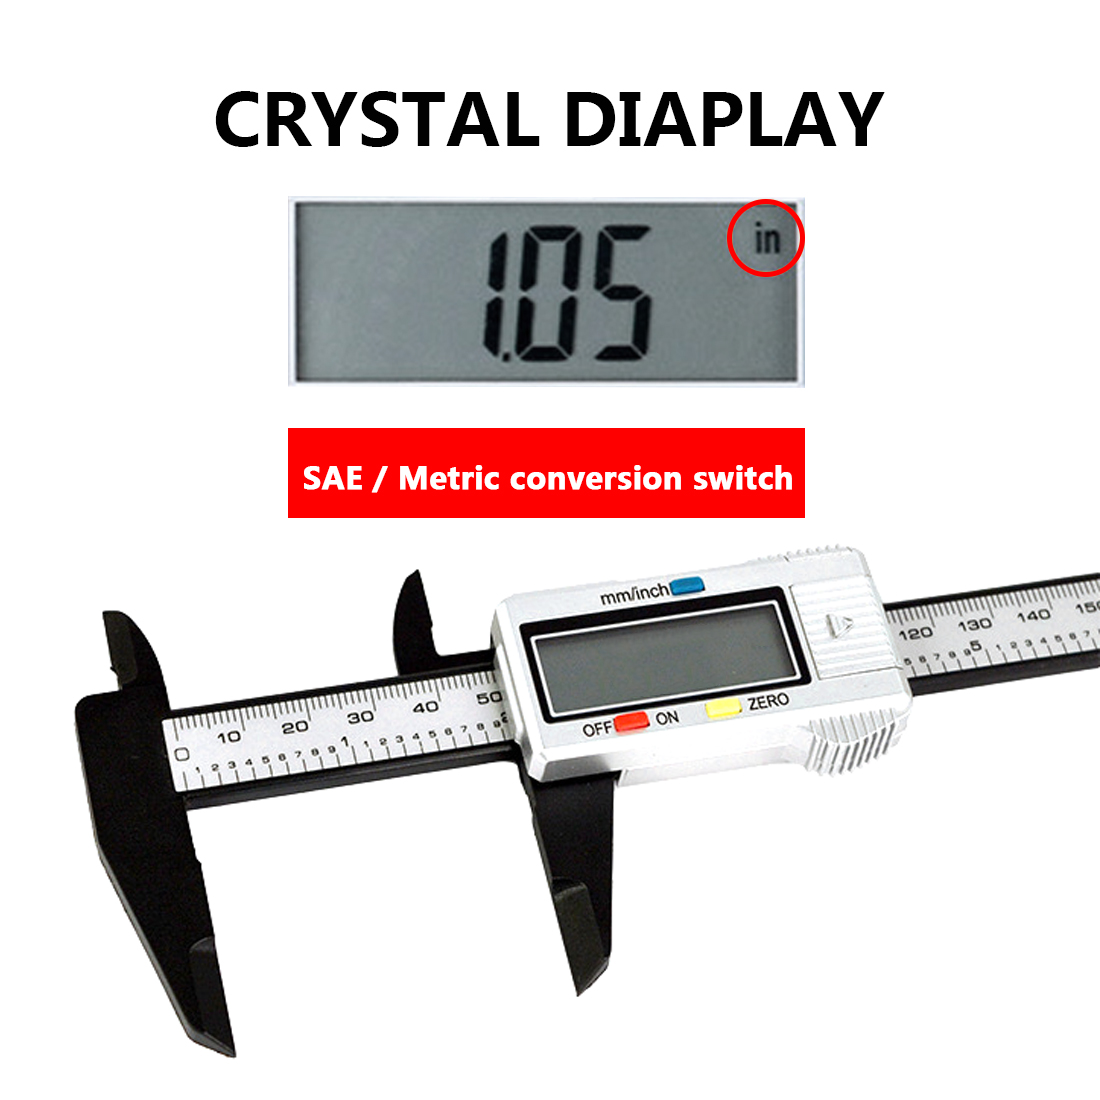 150mm Electronic Digital Caliper 6 Inch Carbon Fiber Vernier Caliper Gauge Micrometer Measuring Tool Digital Ruler